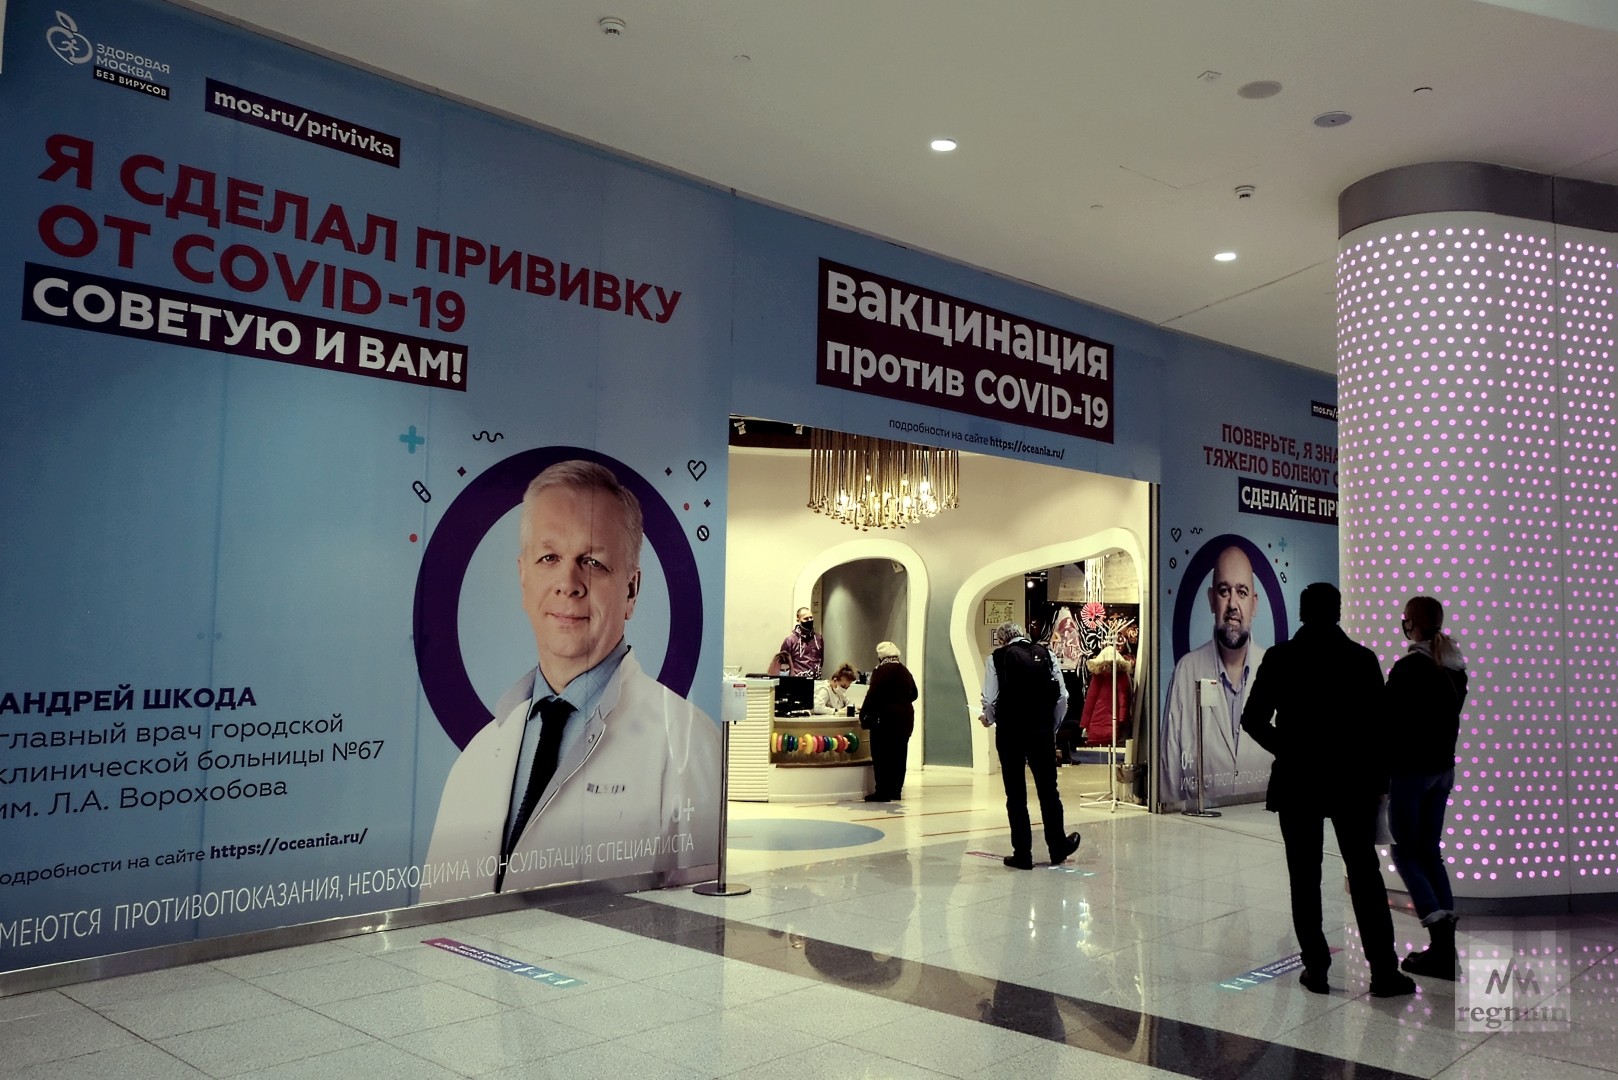 Телефон центра вакцинации. Вакцинация в ТЦ. Пункты вакцинации в Москве. Пункт вакцинации в торговом центре. Пункты вакцинации в ТРЦ.